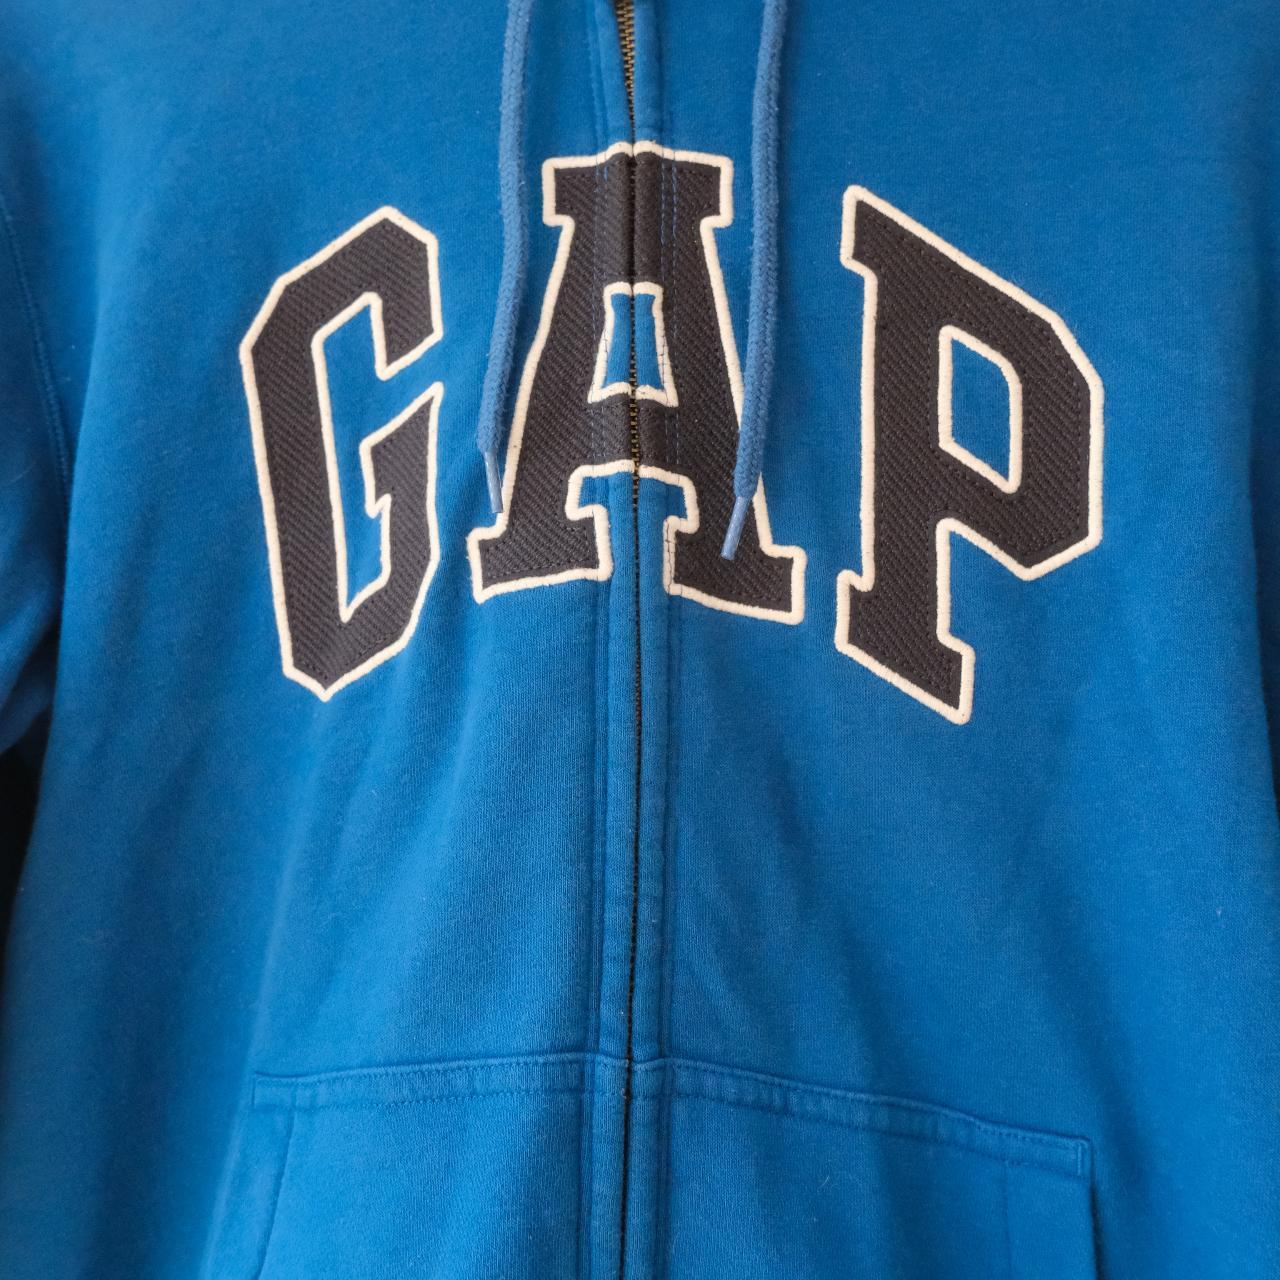 Vintage Zip up GAP hoodie size small #GAP #vintage... - Depop